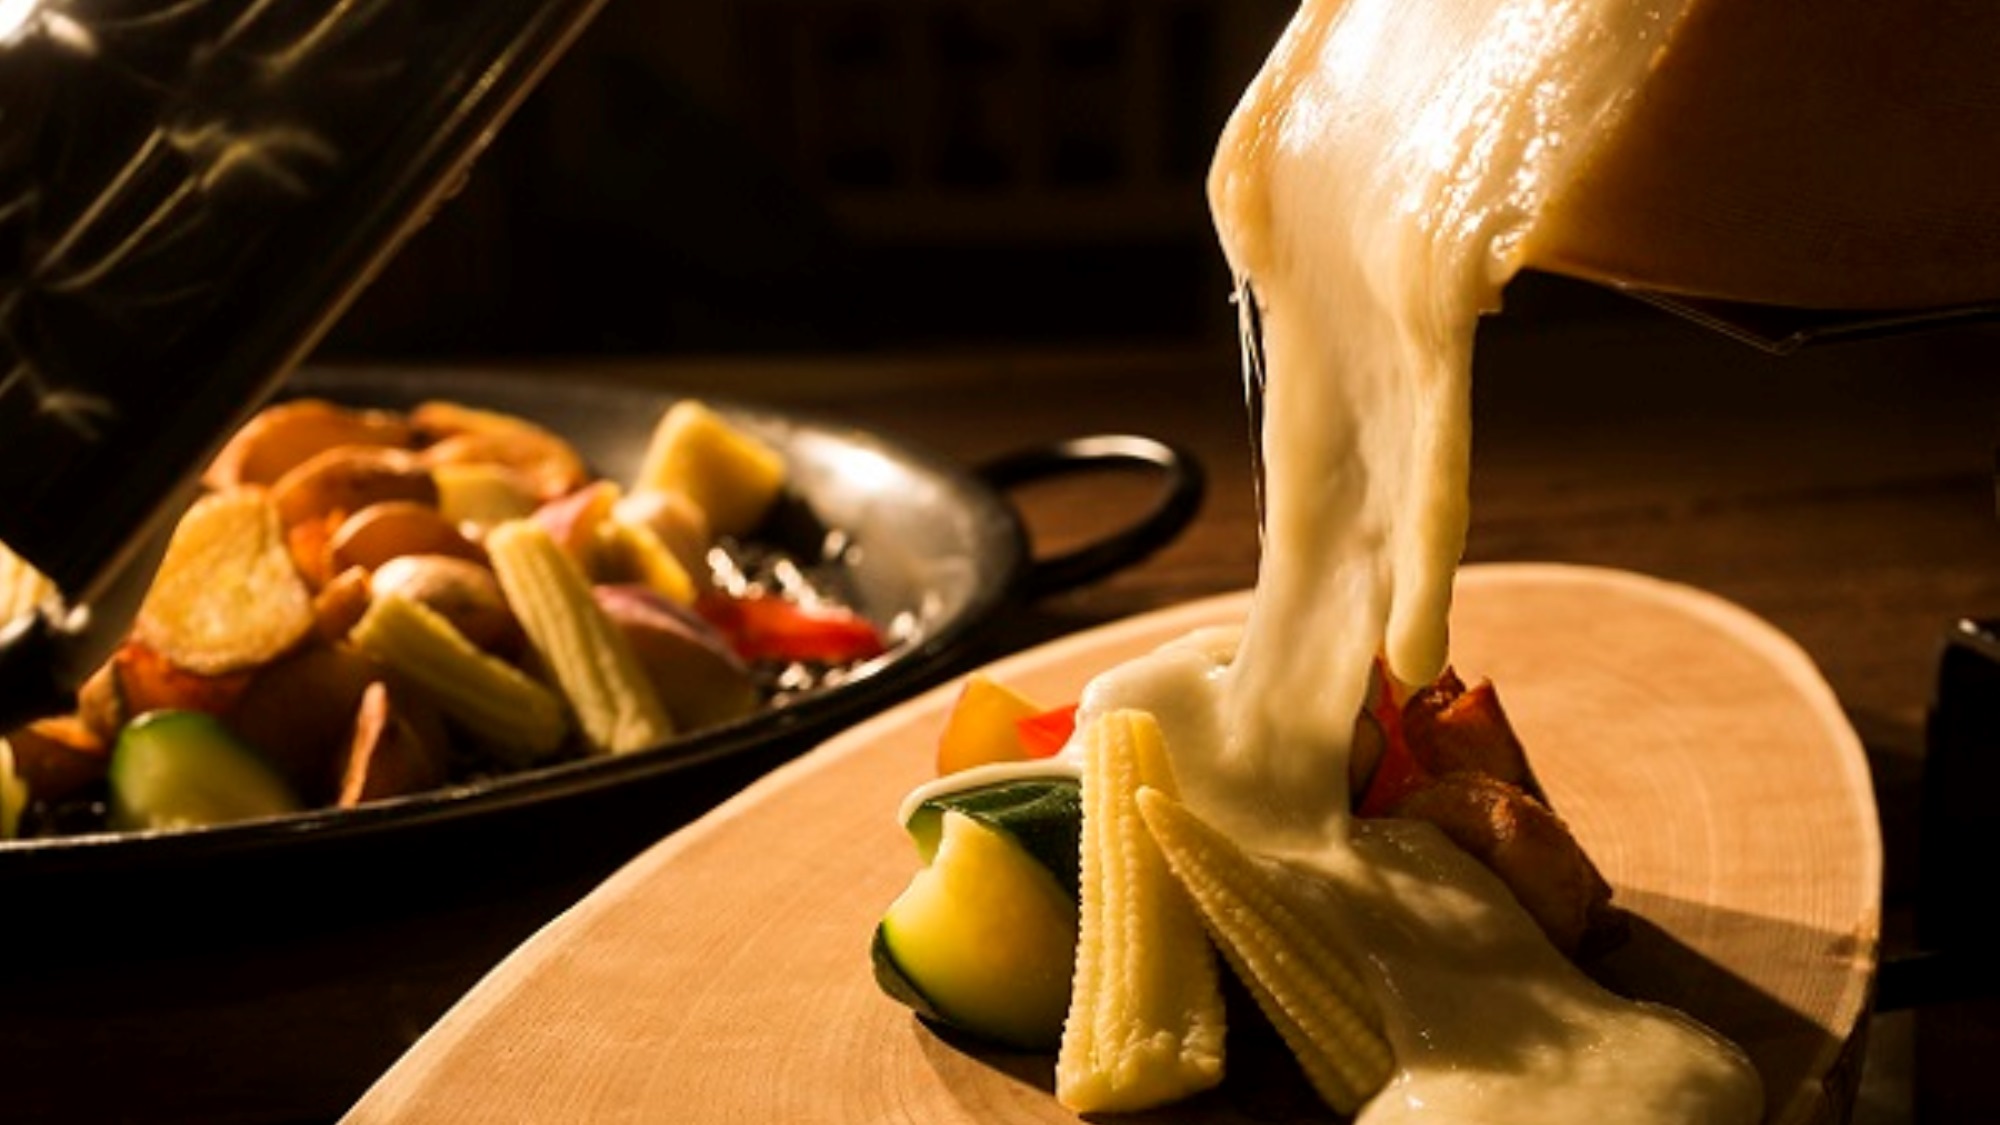 ラクレットチーズ ※イメージ 十勝の恵みを存分に味わう　ガーデンスパ十勝川温泉